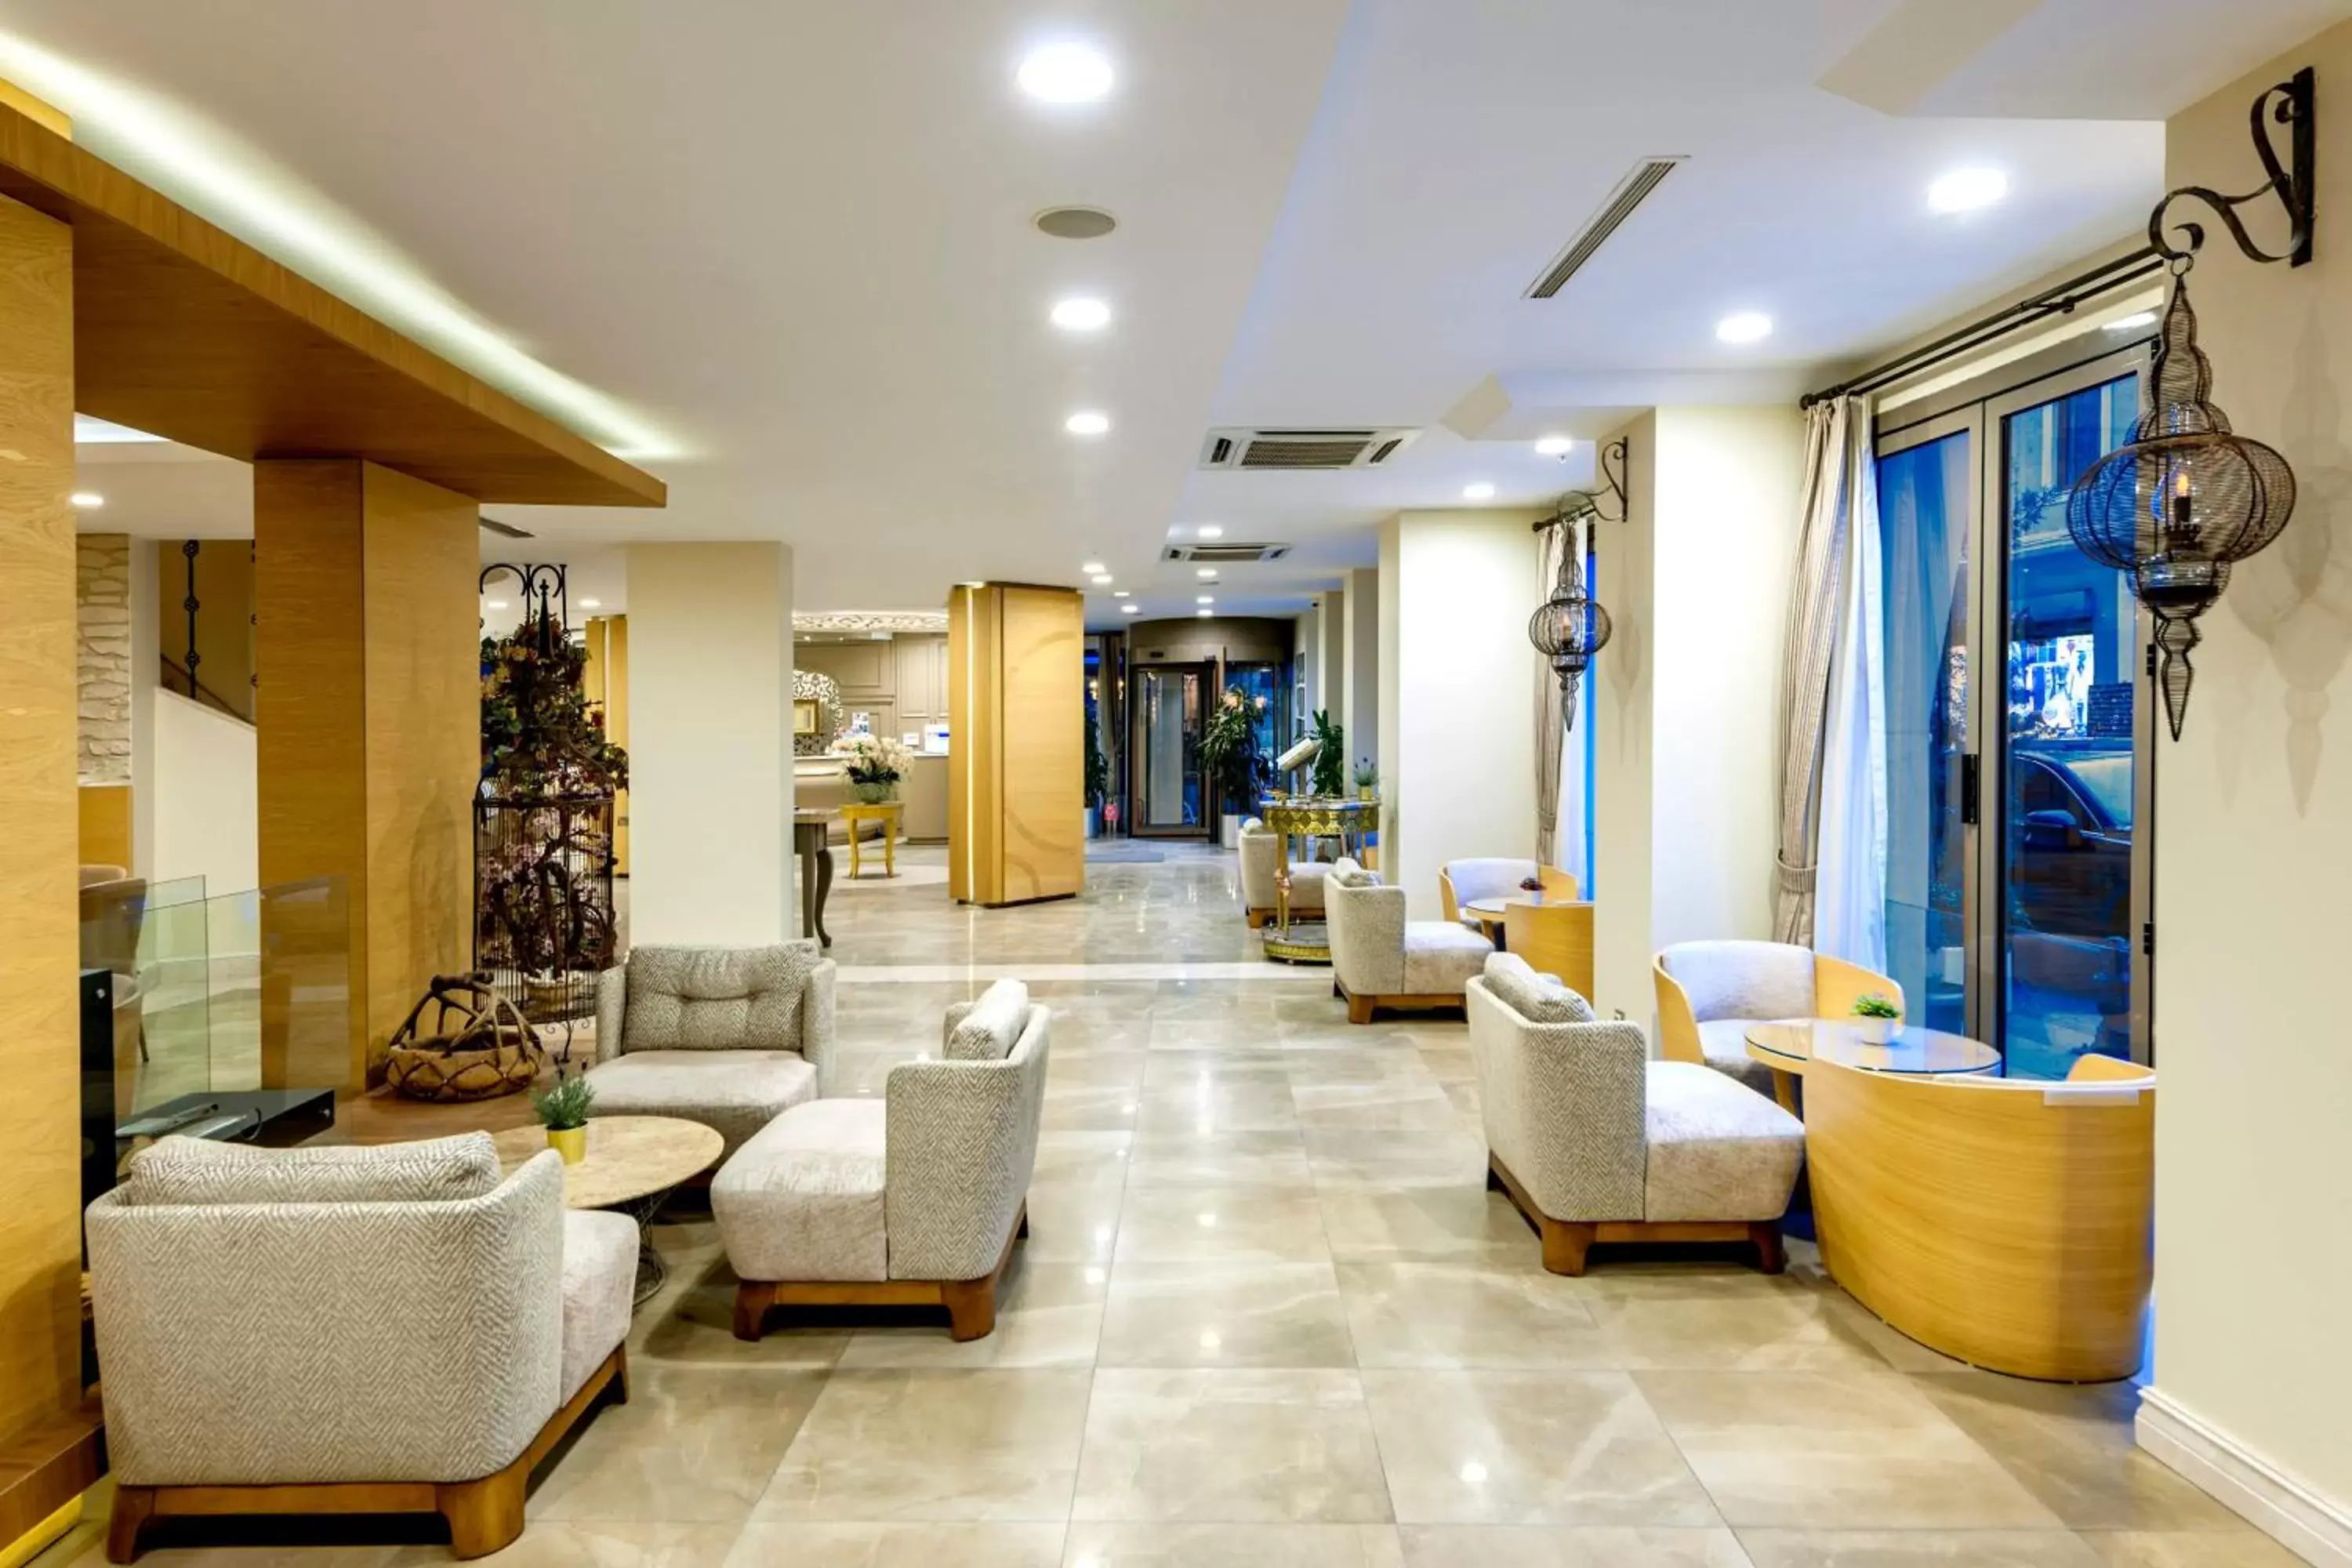 Lobby or reception, Lobby/Reception in Hotel Yasmak Sultan